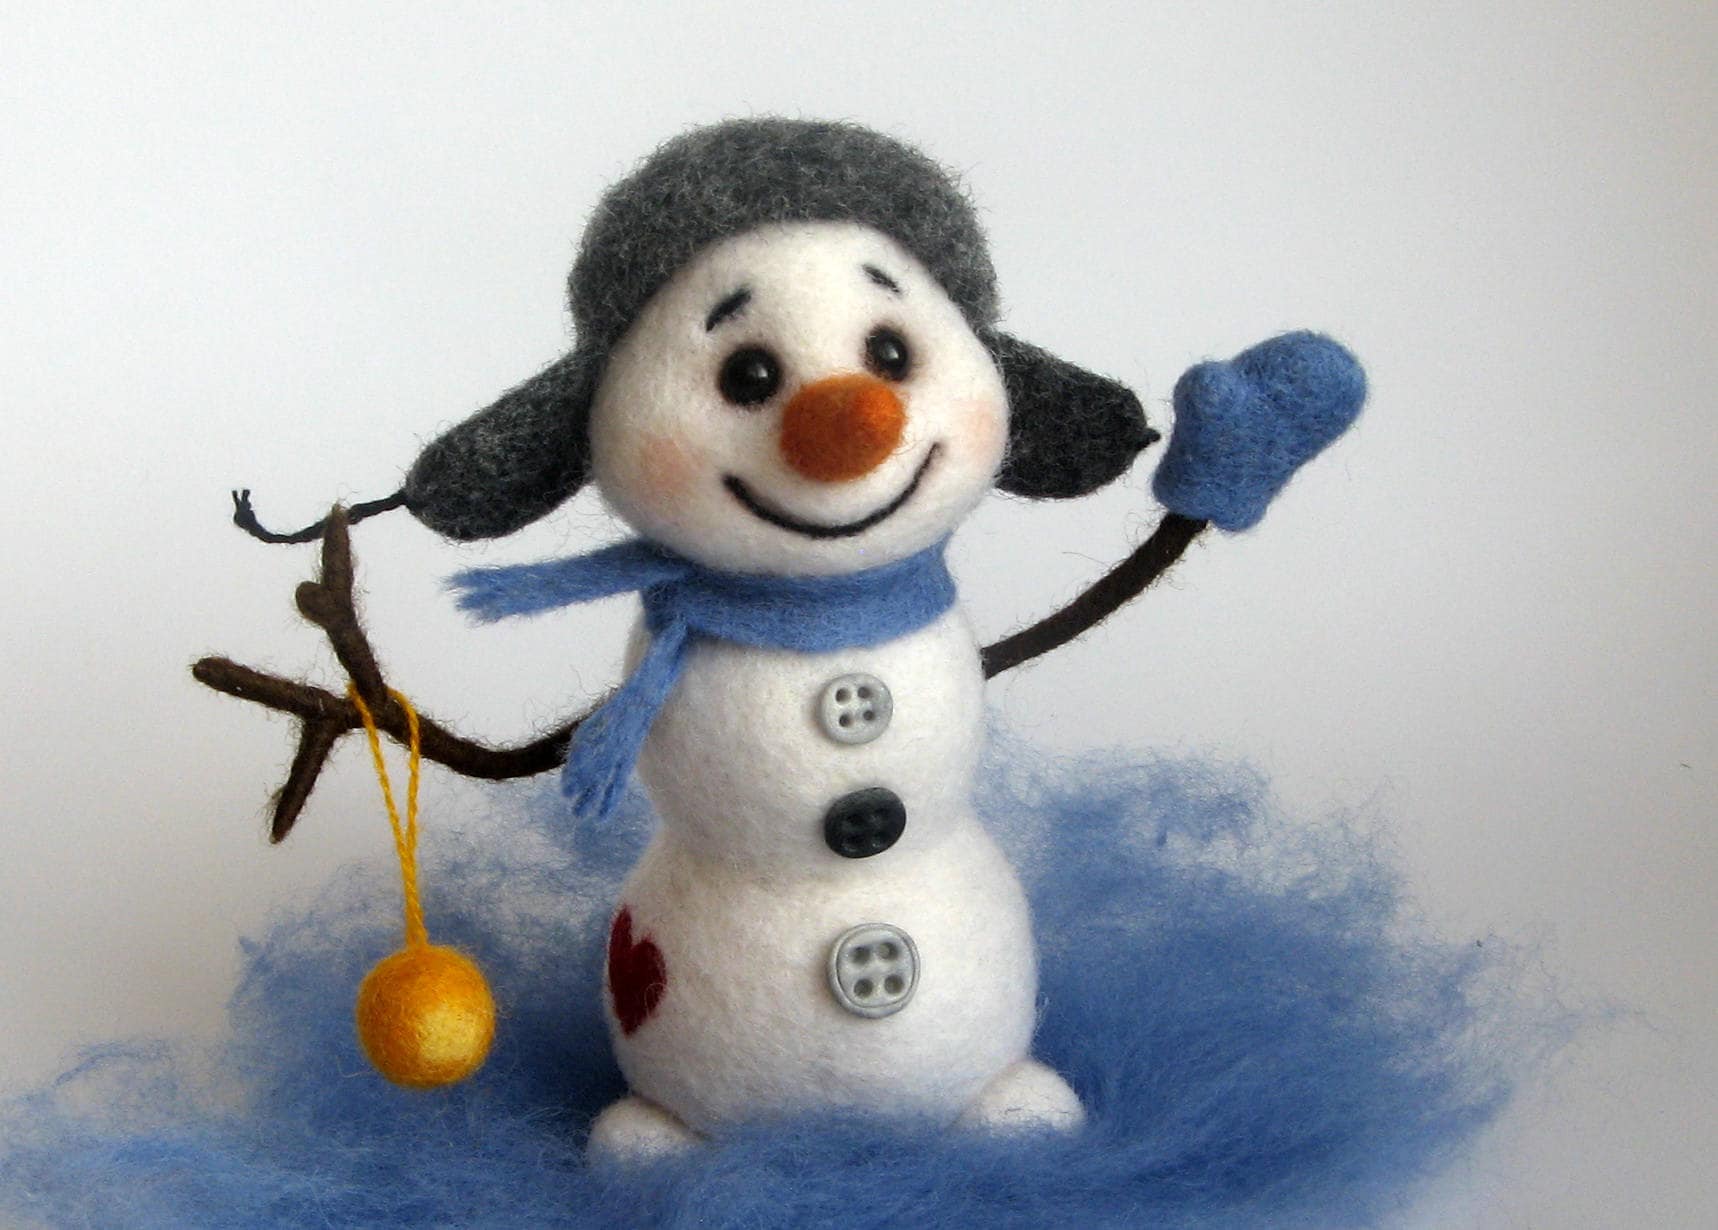 8cm Felt Snowman Handmade Micro Mini Snowman Doll Felt Christmas